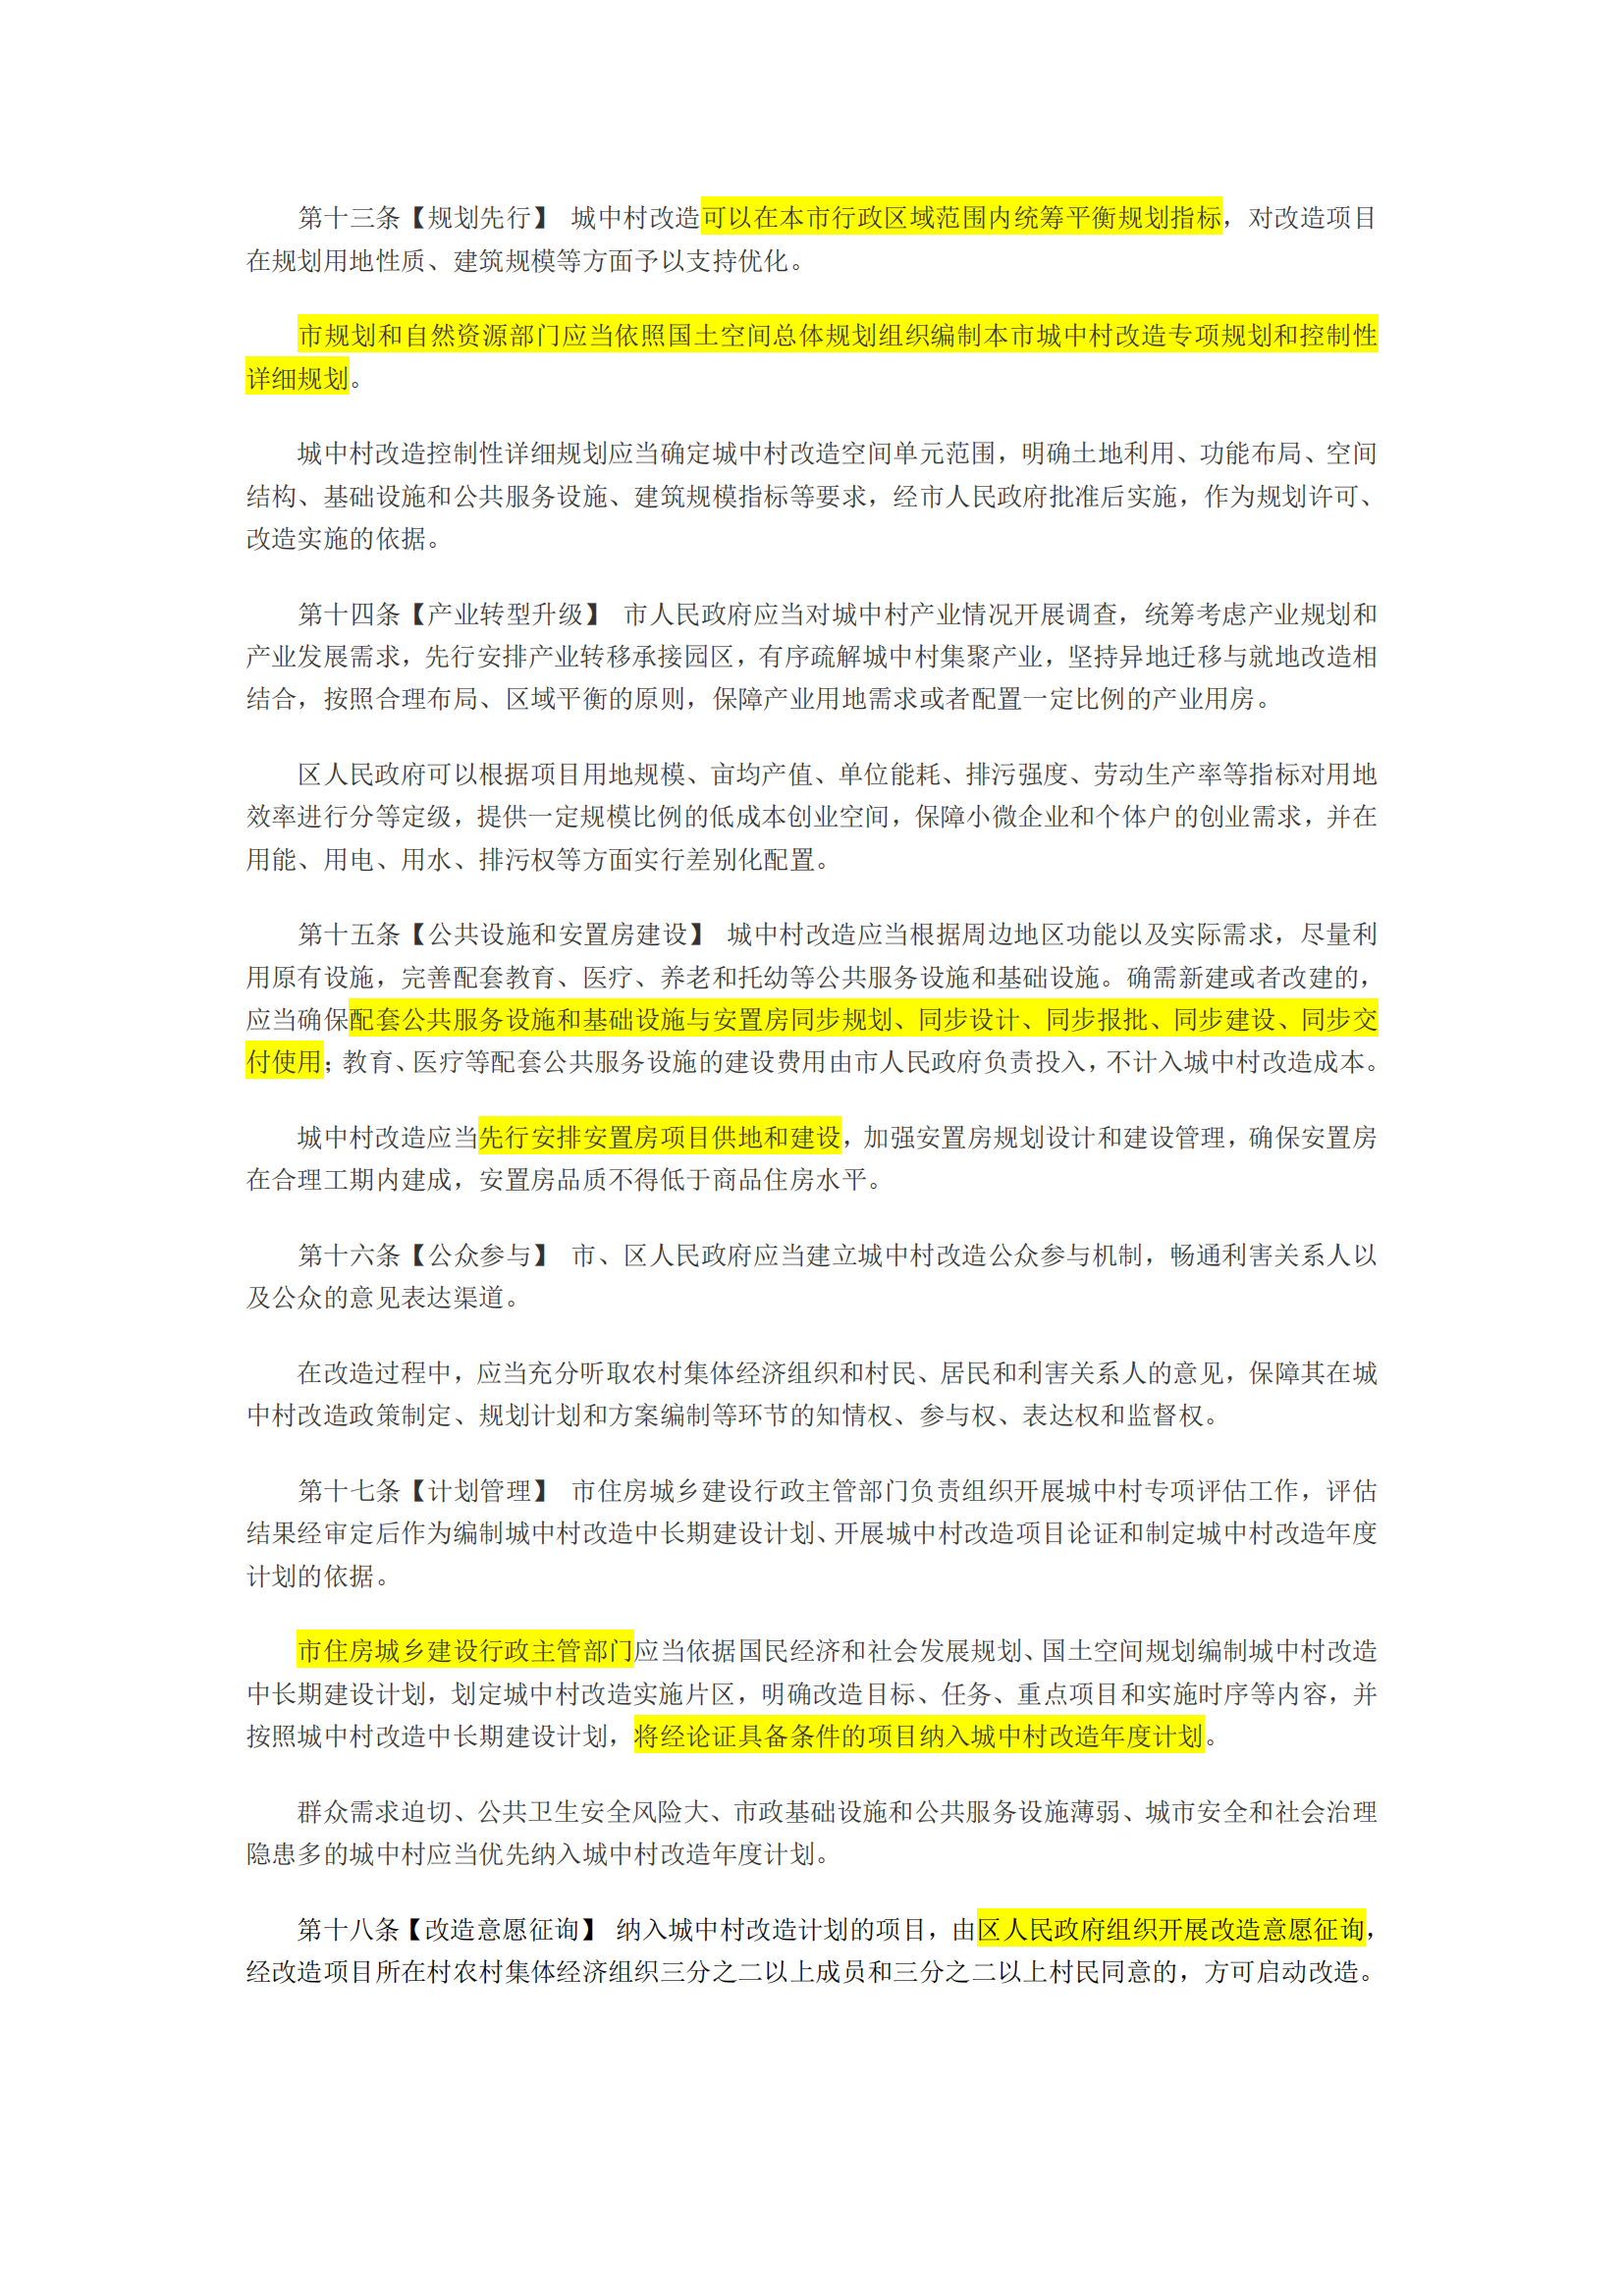 广州市城中村改造条例(征求意见稿，批注版)_02.png